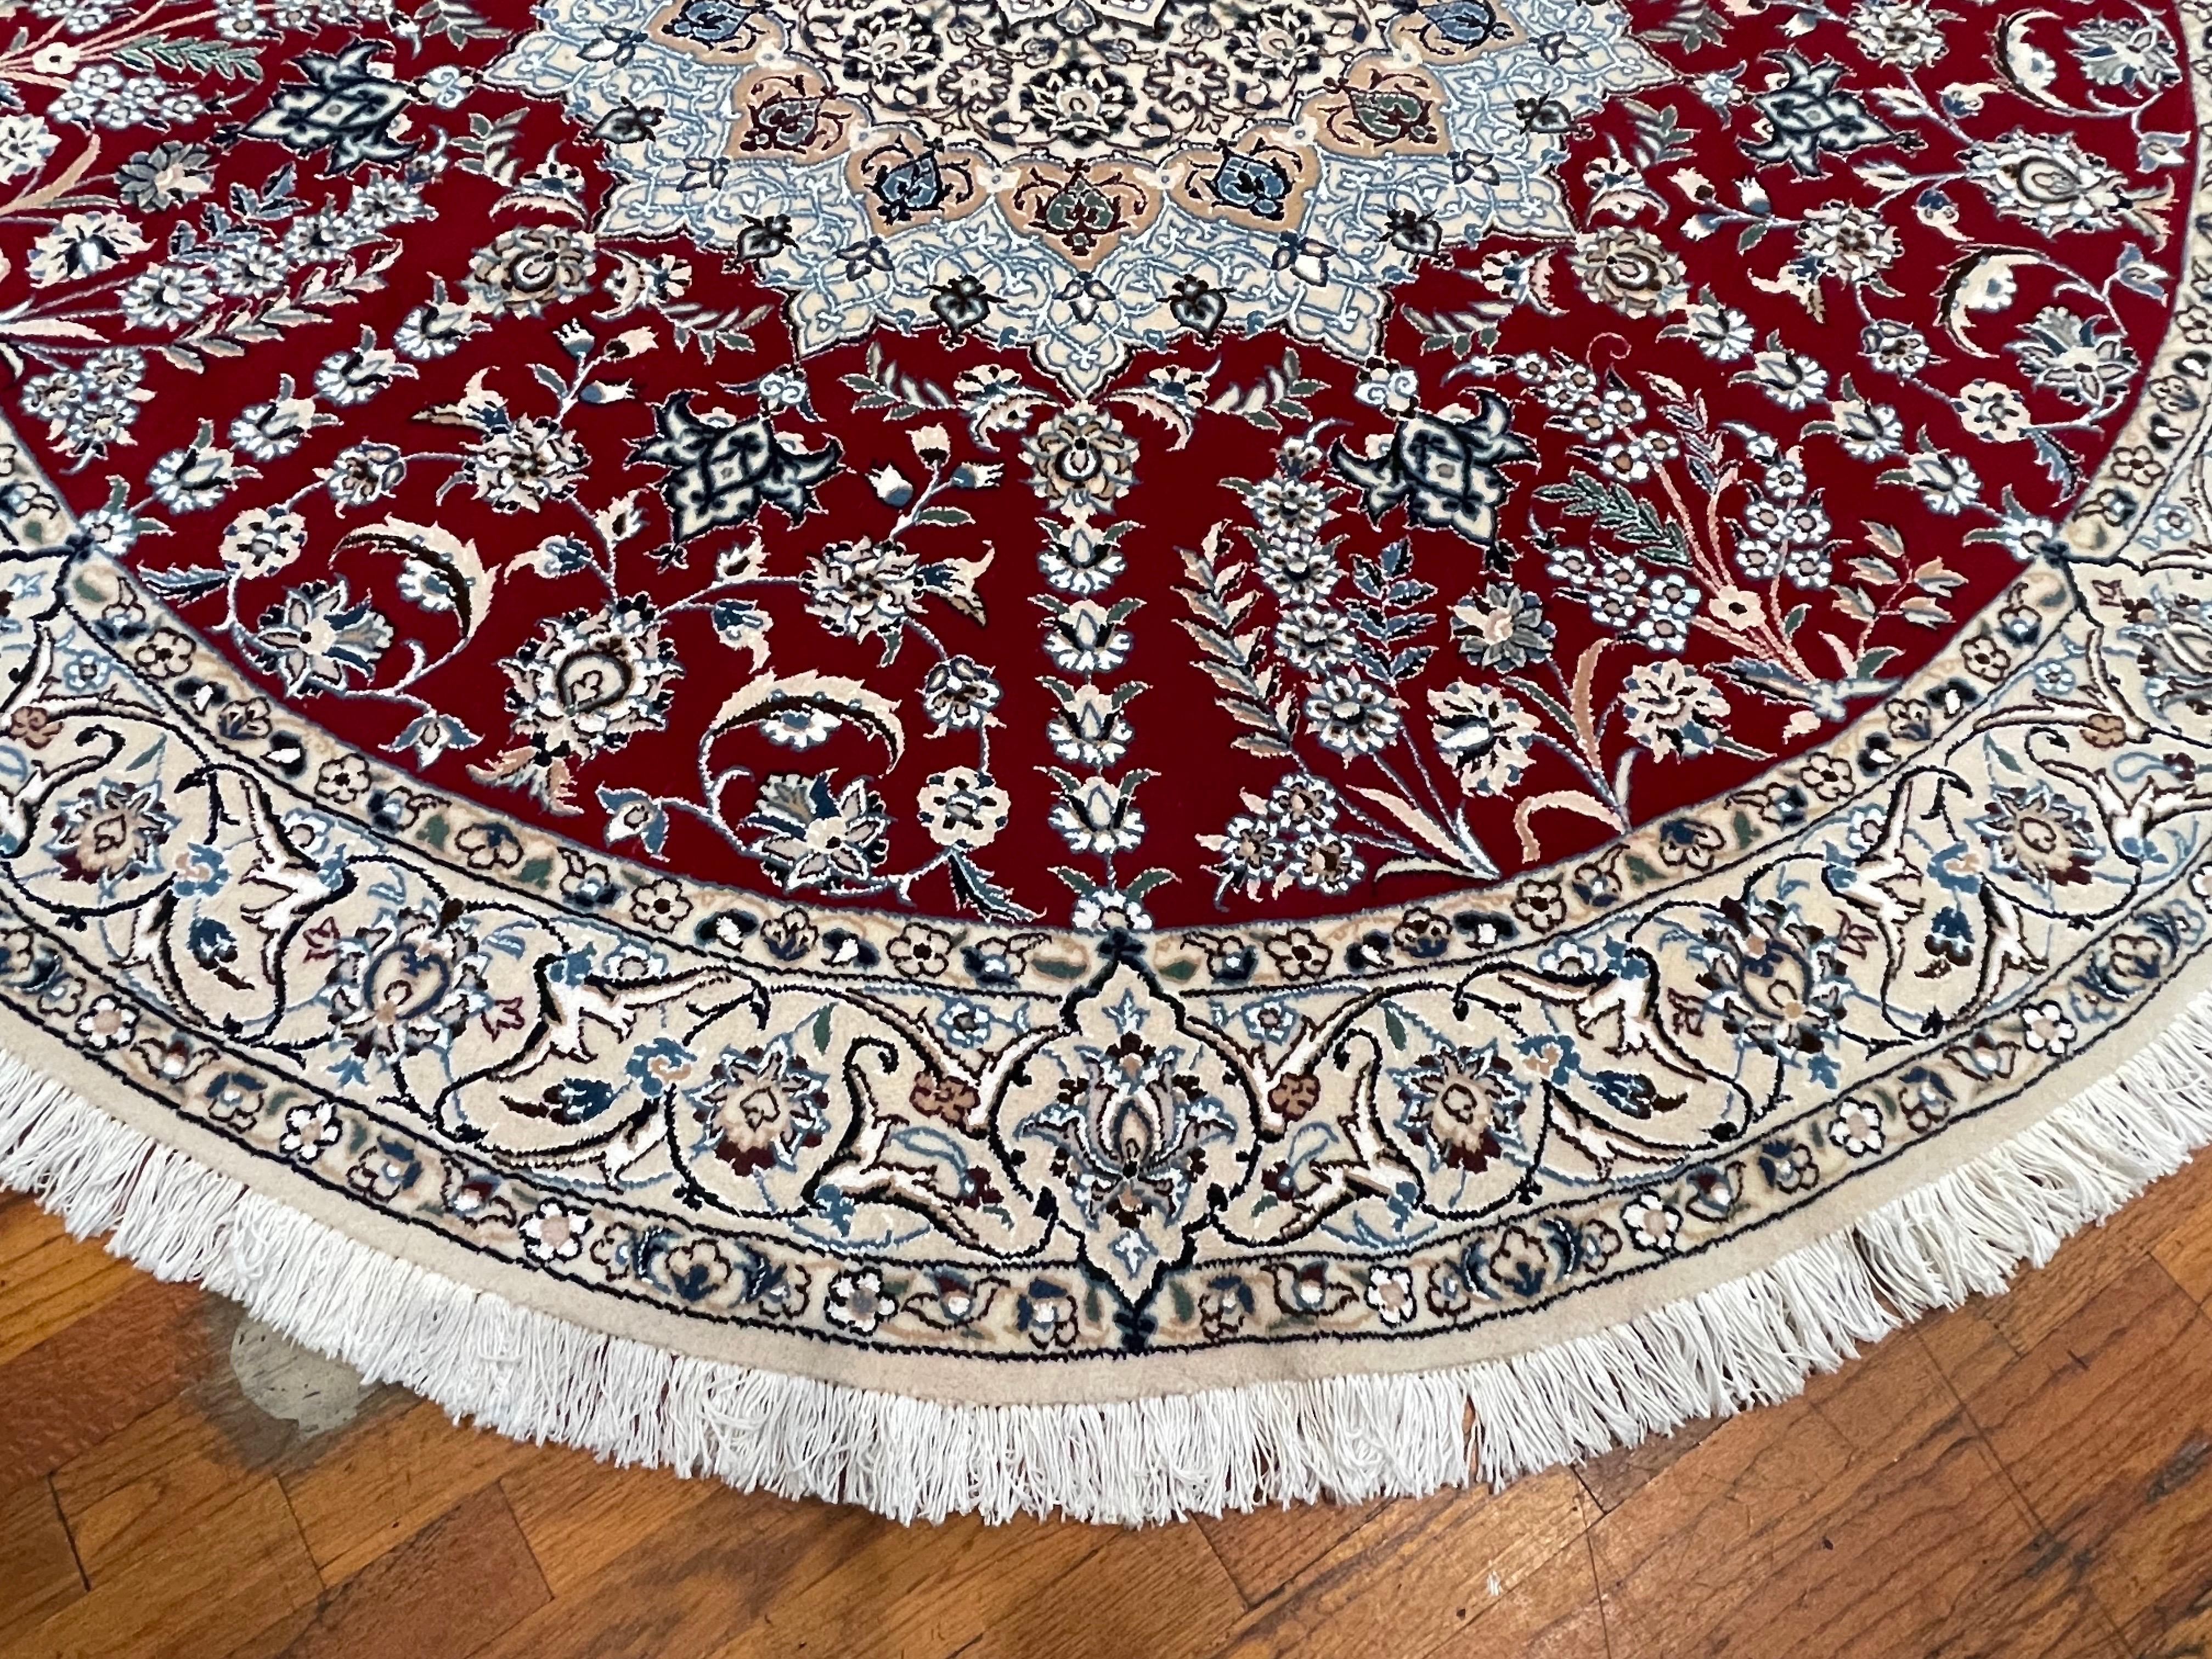 Cet authentique tapis persan rond de Nain (9 LA), fait à la main, est composé de poils de laine et de soie et d'une base en coton. Nain est une ville d'Iran réputée pour sa production de tapis artisanaux. Ce tapis présente un médaillon central avec